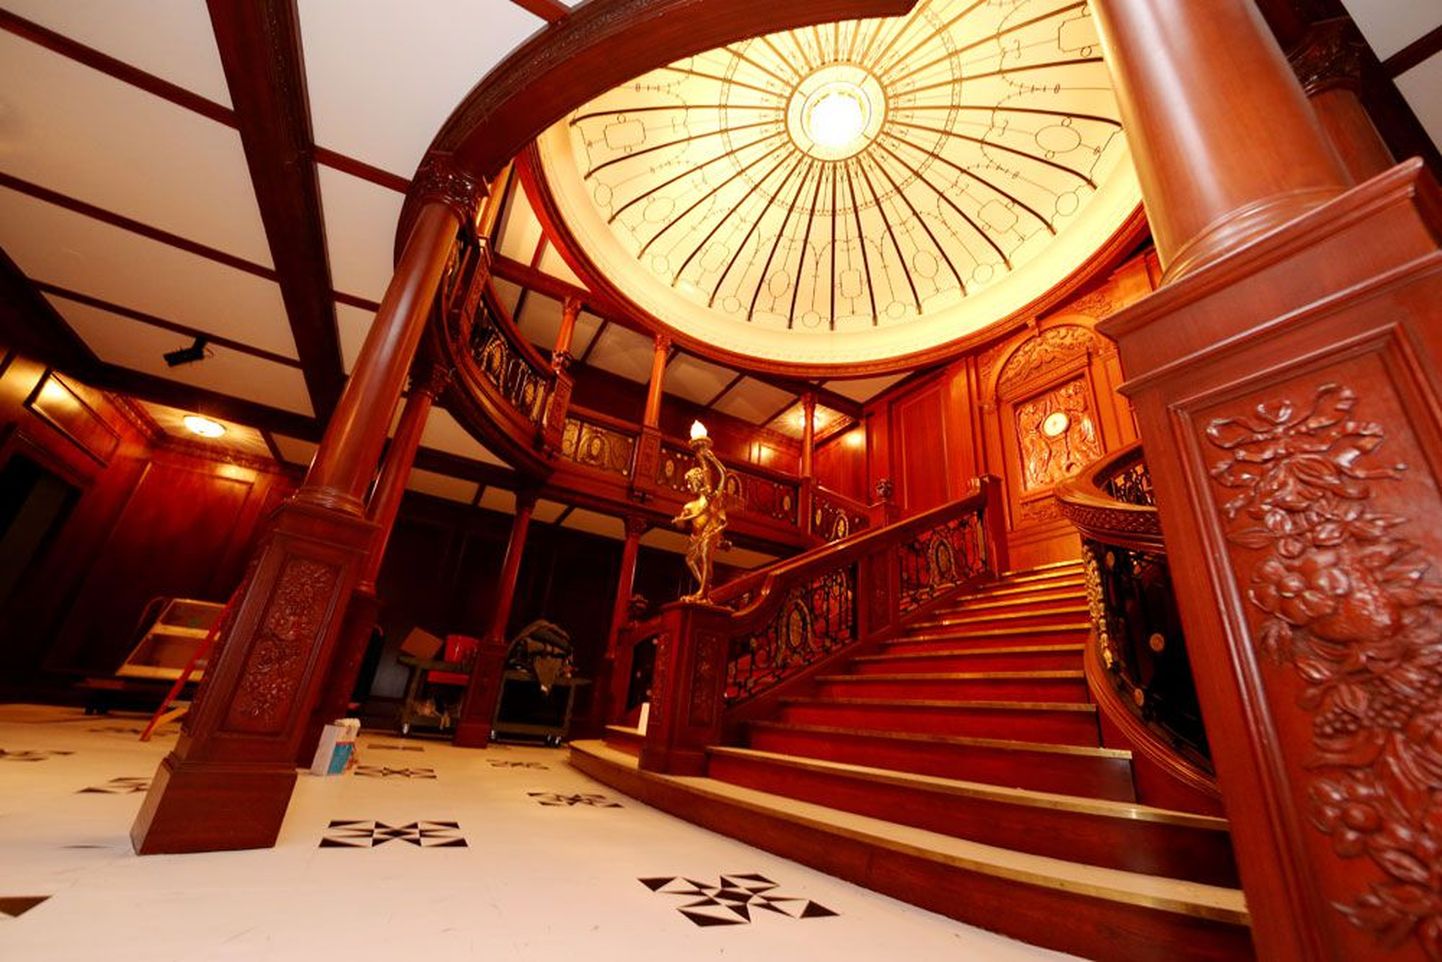 Nagu filmis: Titanicu näituse naelaks on läbi mitme korruse üles ehitatud trepi elusuuruses rekonstruktsioon, mis sai kuulsaks samanimelise filmi kaadritest.